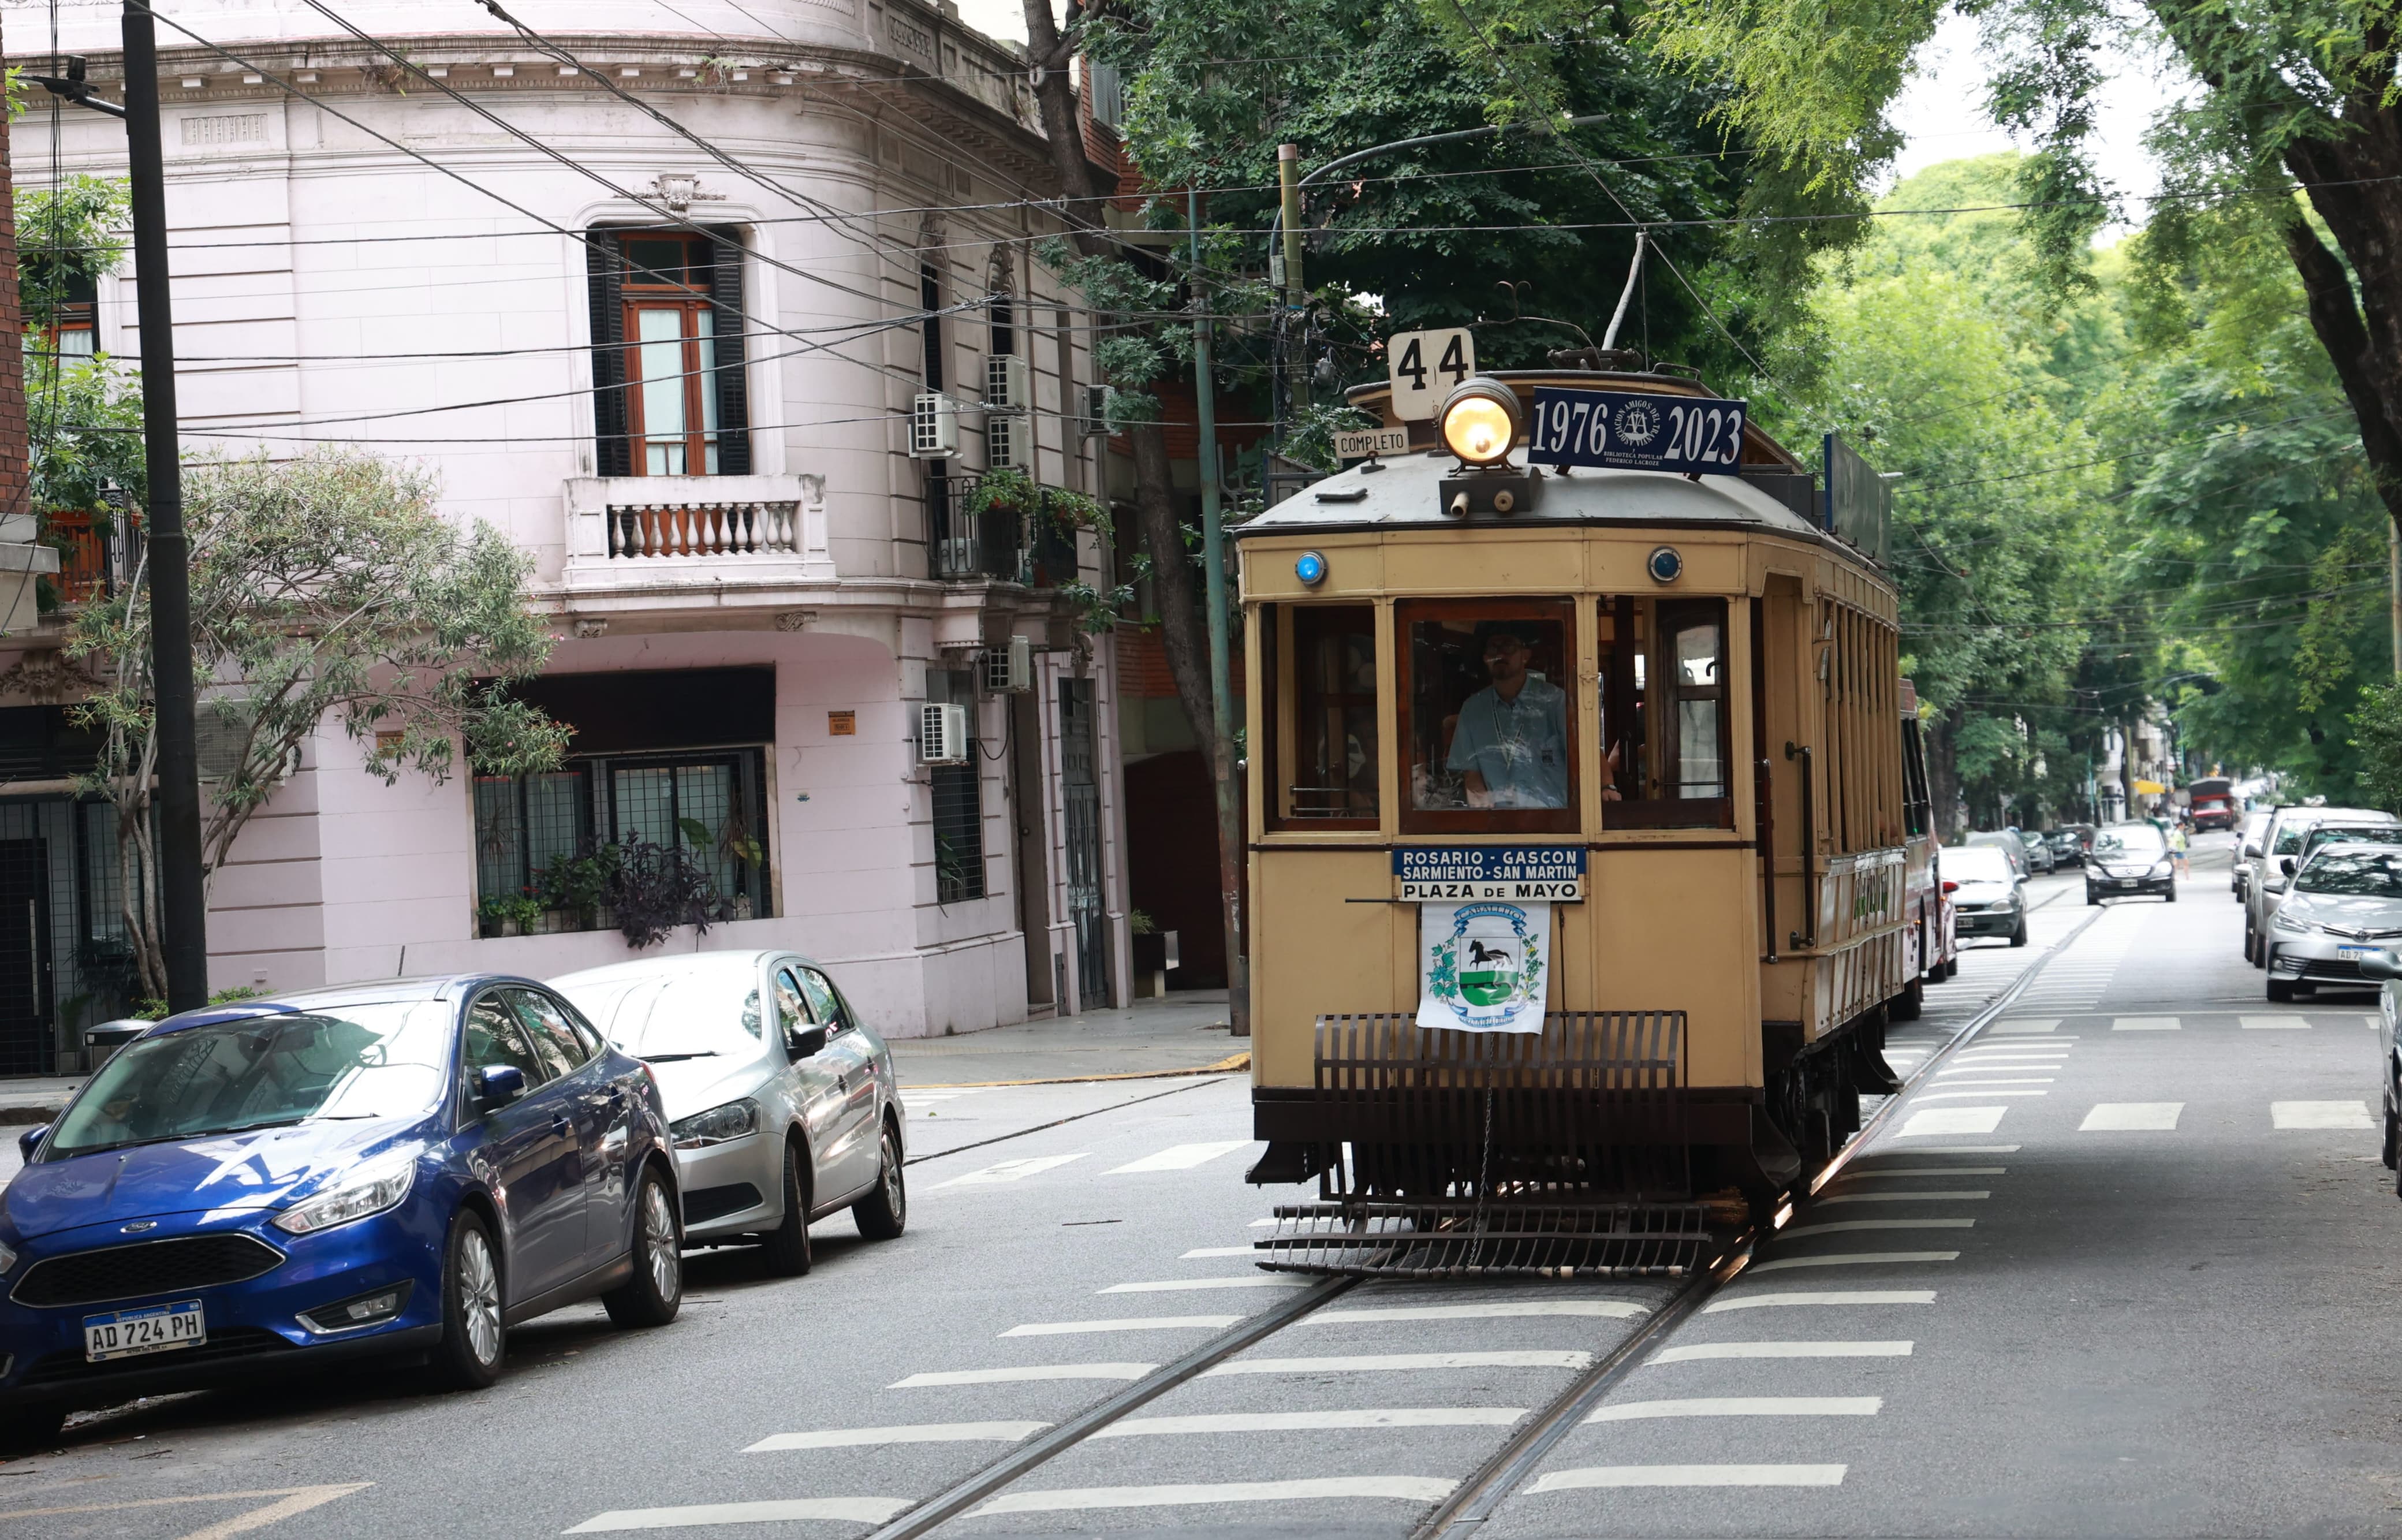 Tranvía histórico: recorridos gratuitos en el corazón porteño